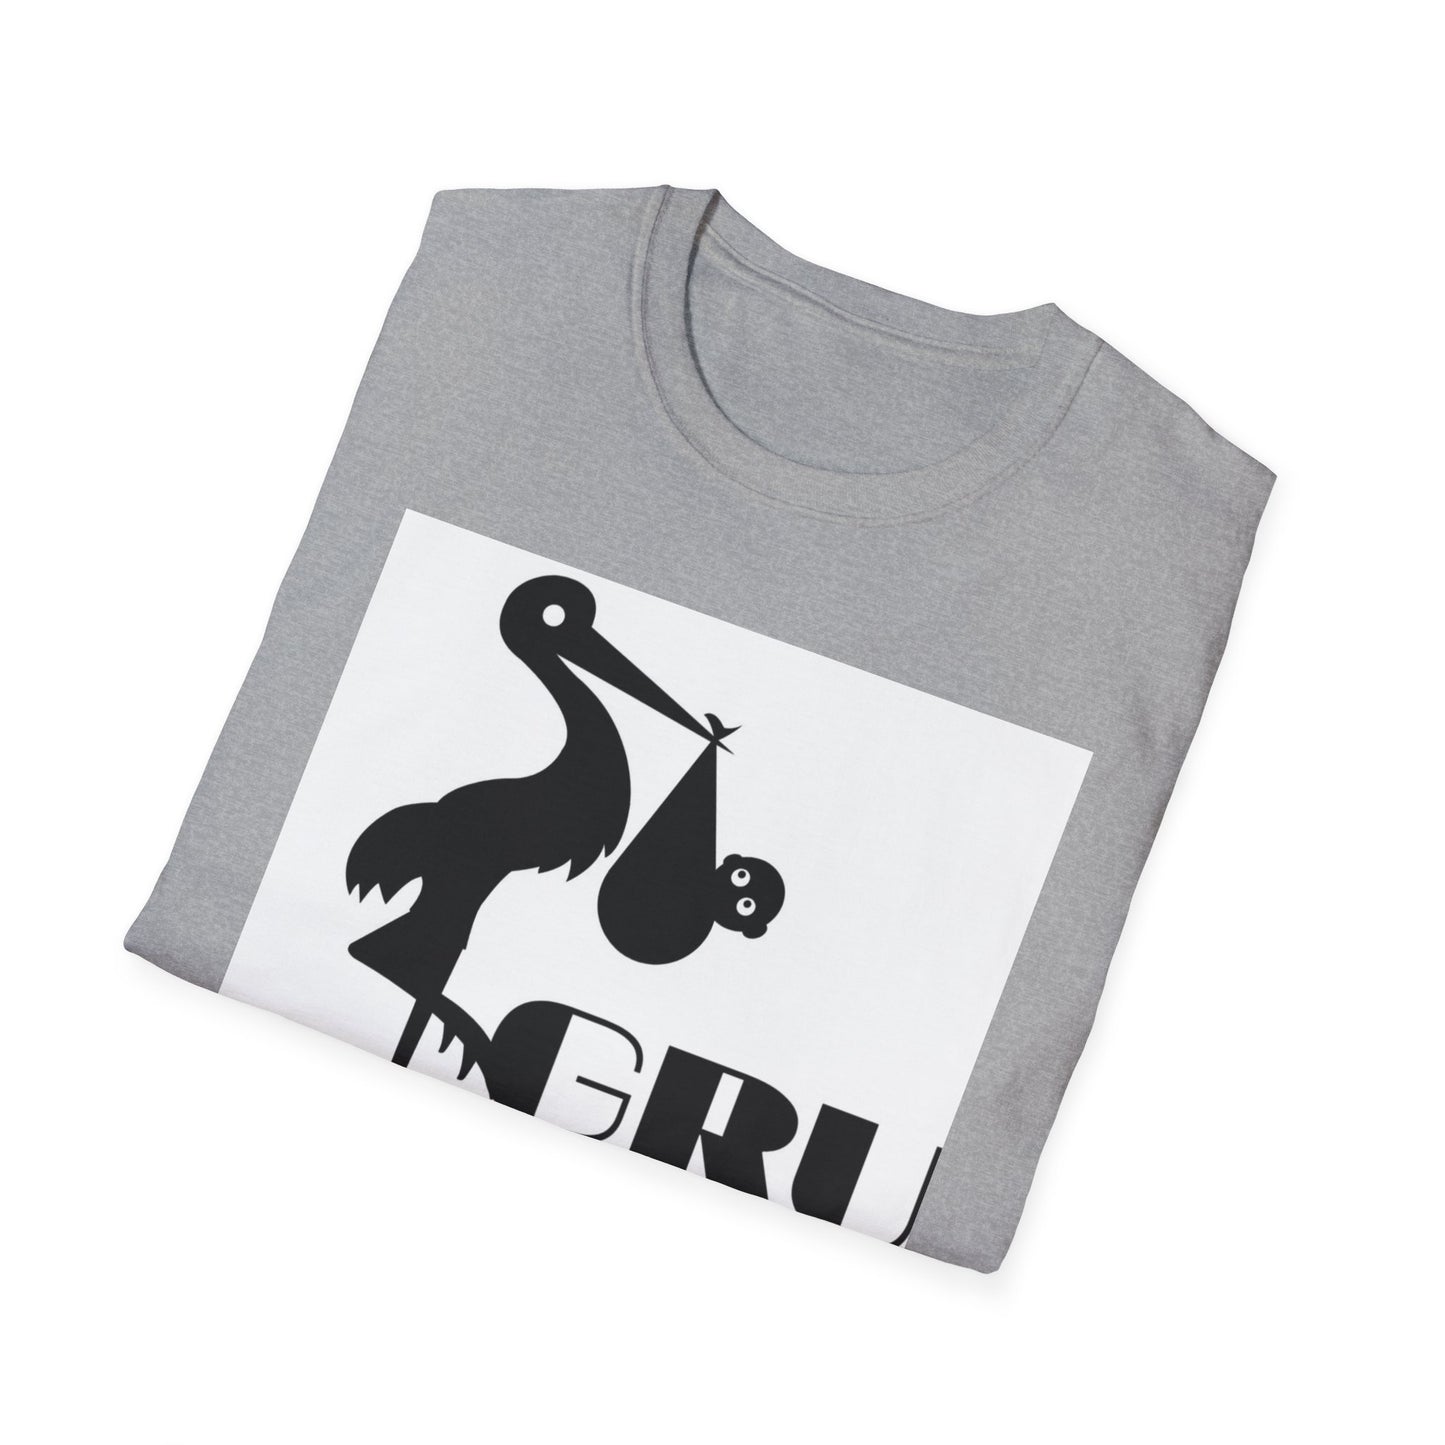 GRUMONH Unisex Softstyle T-Shirt